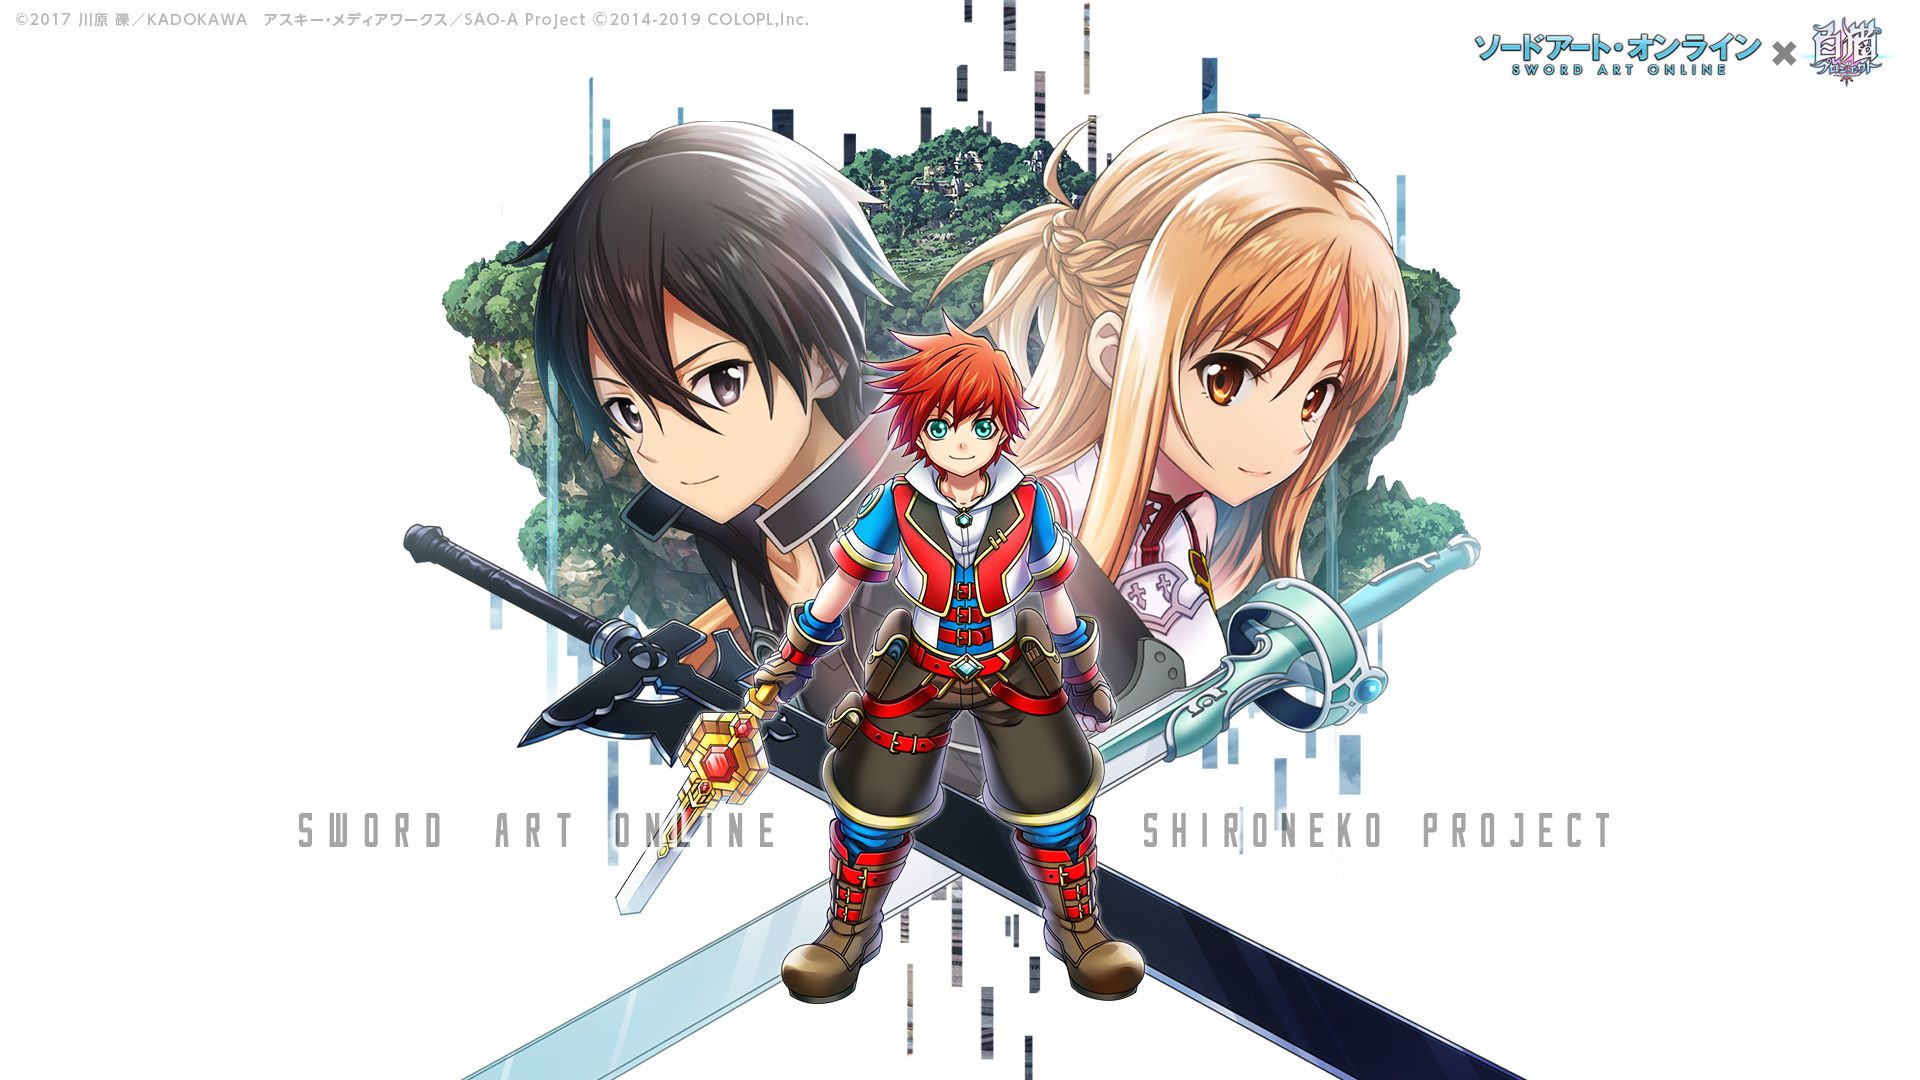 Sword Art Online Crossover Shironeko Project 1080P